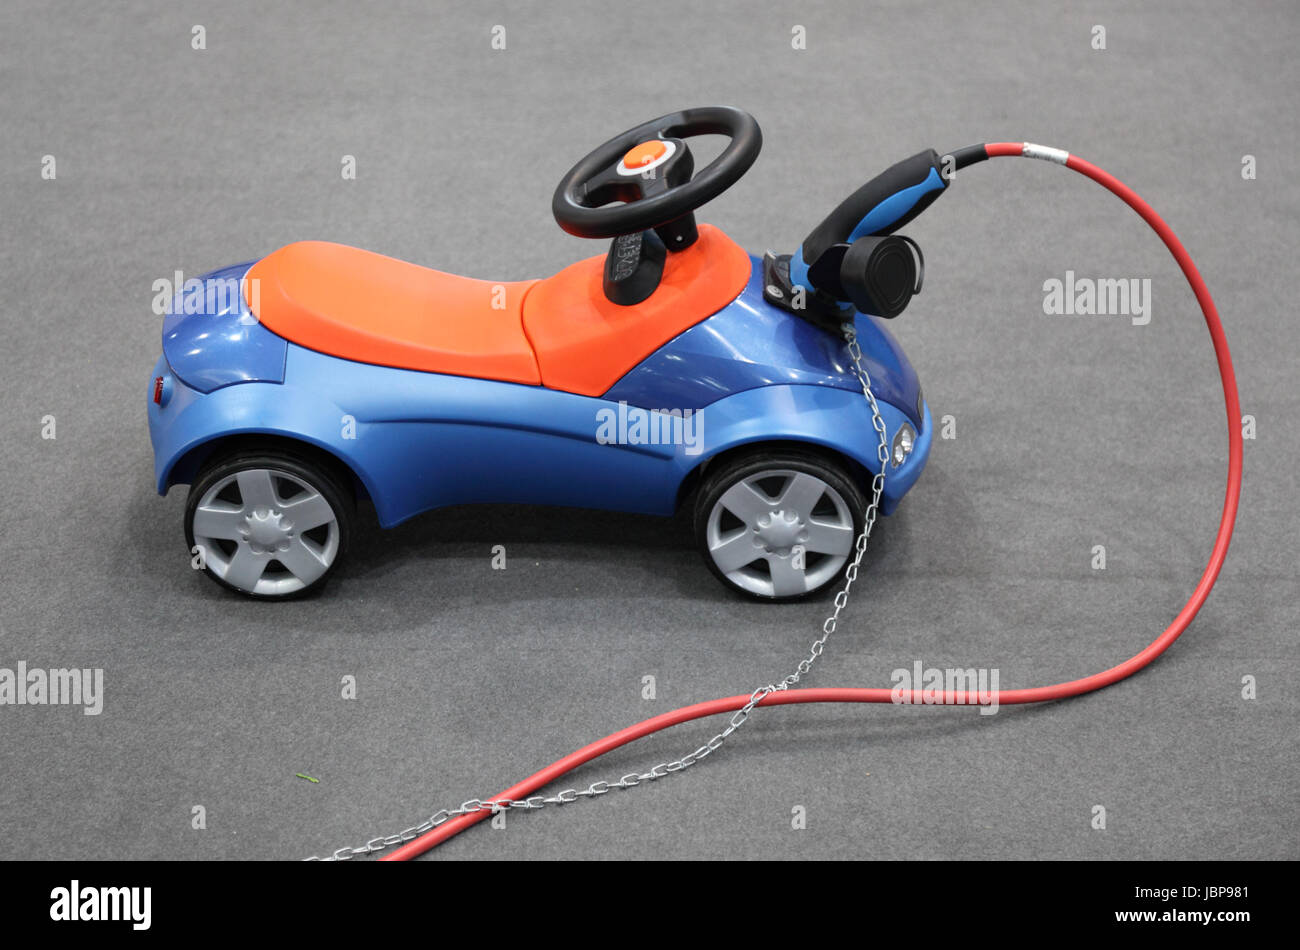 Bobby-Car Spielzeug Elektroauto für Kinder Stockfotografie - Alamy